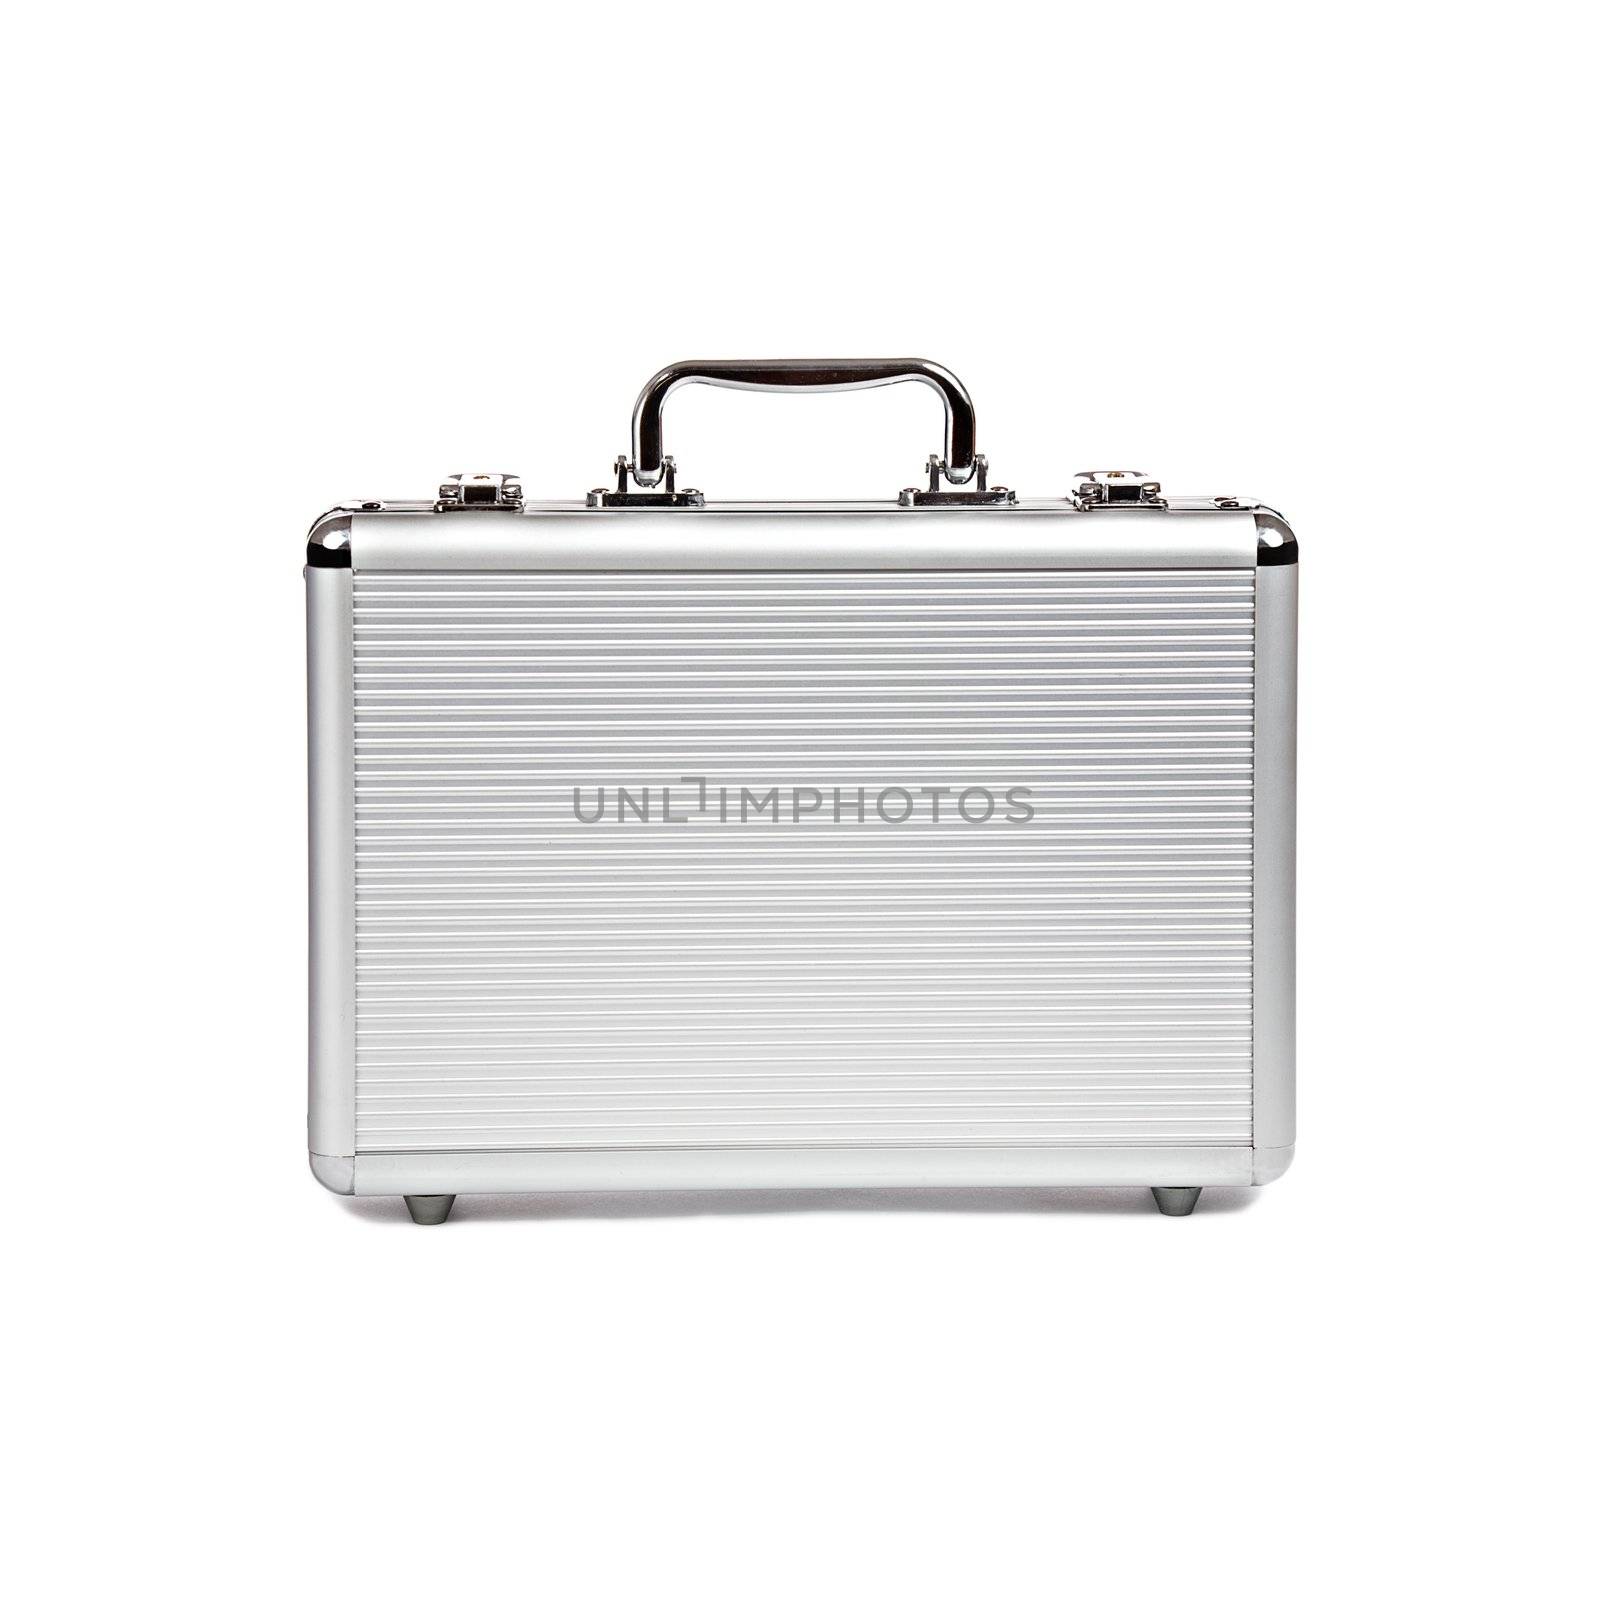 metallic suitcase isolated on white background